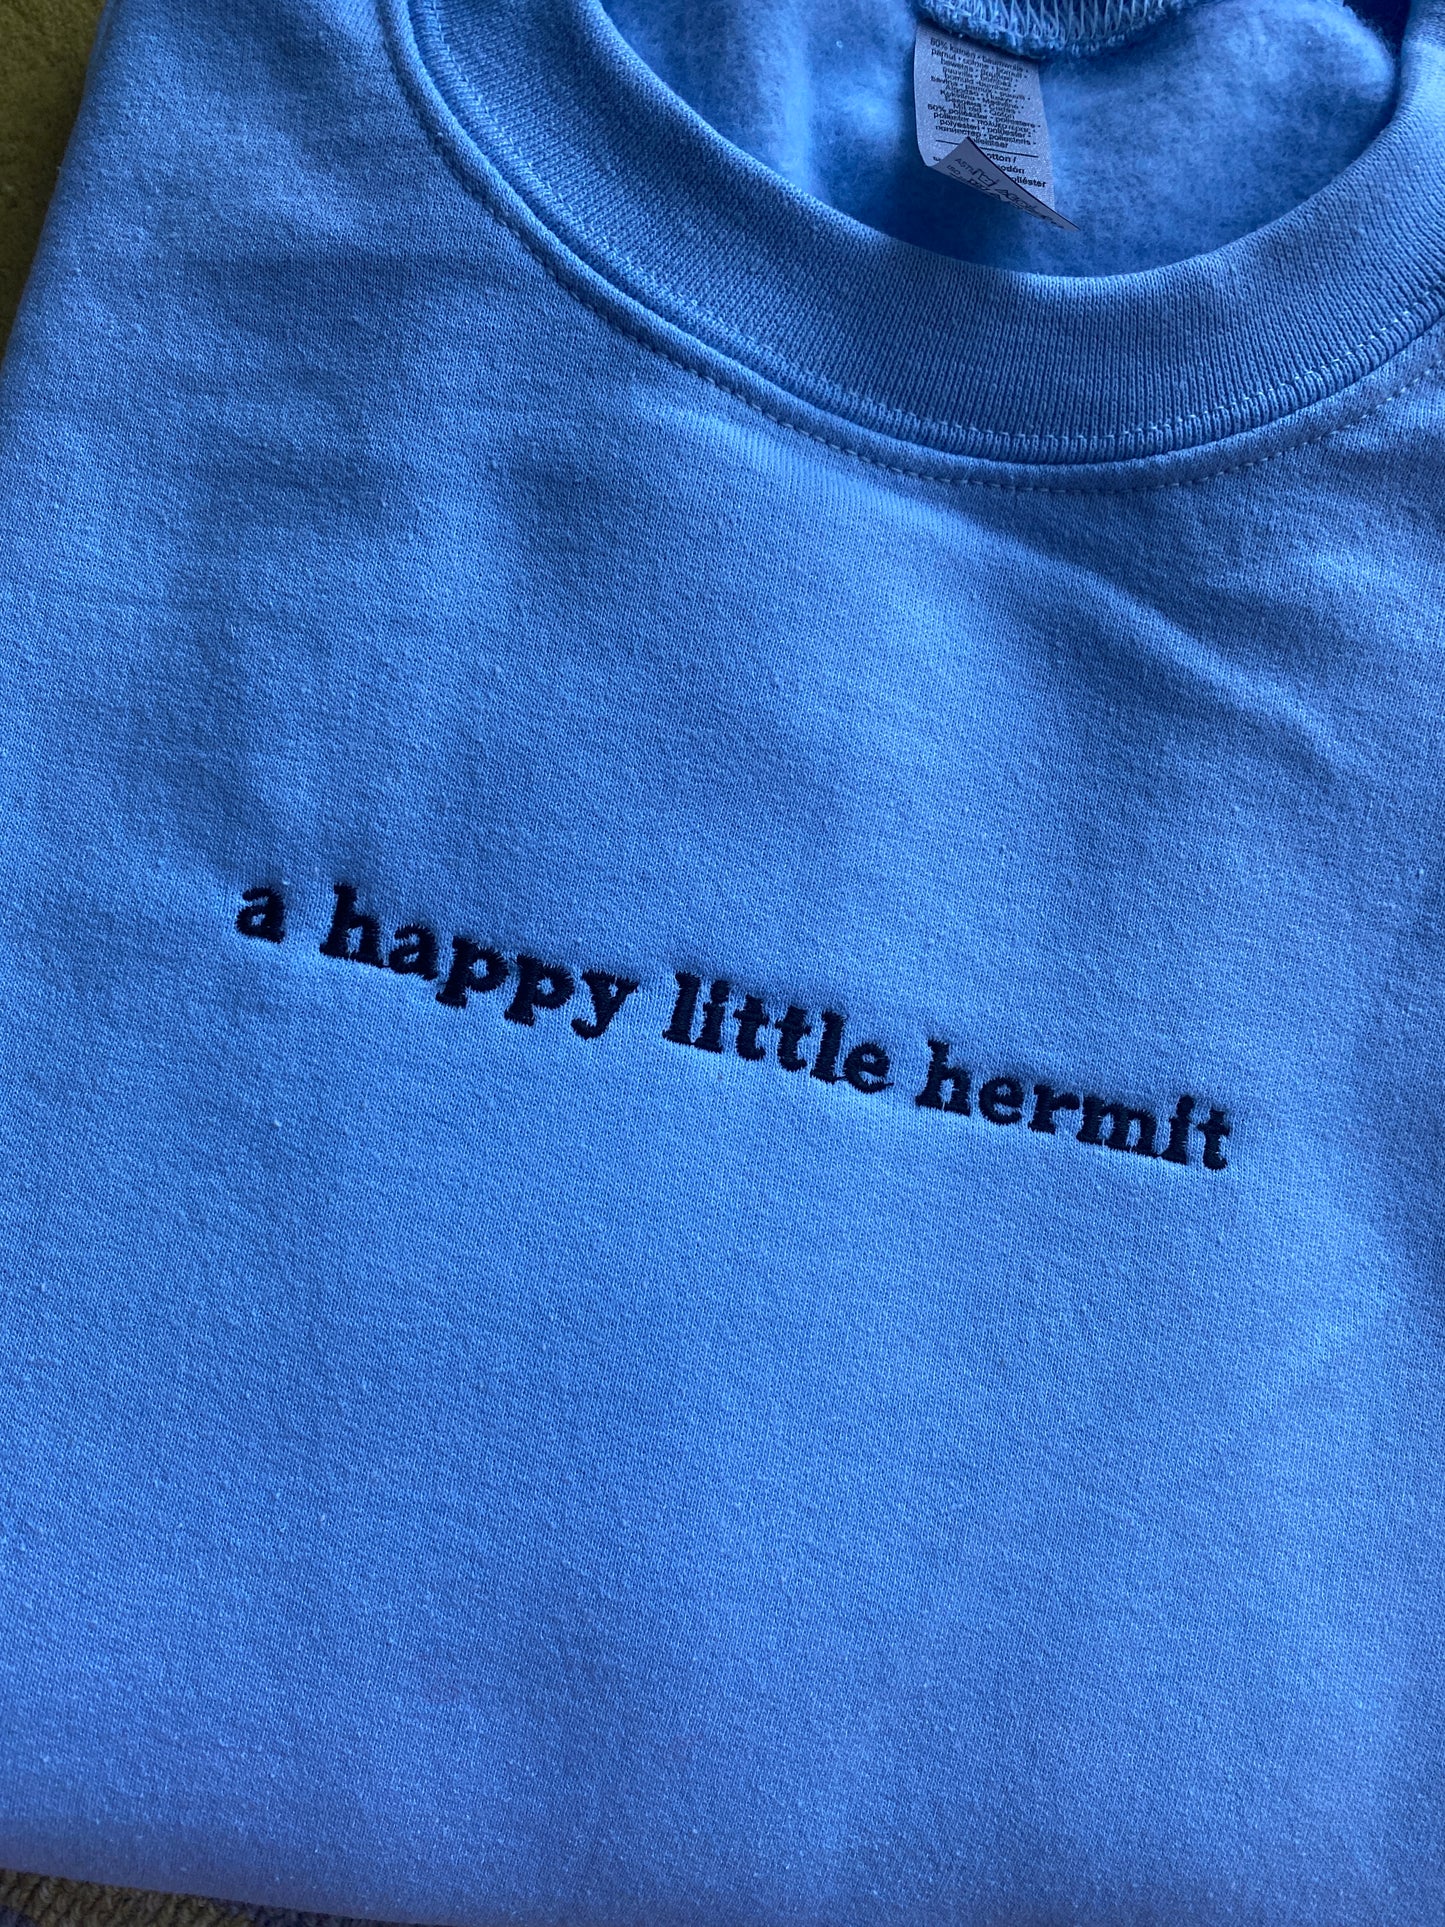 Little Hermit Embroidered Sweatshirt